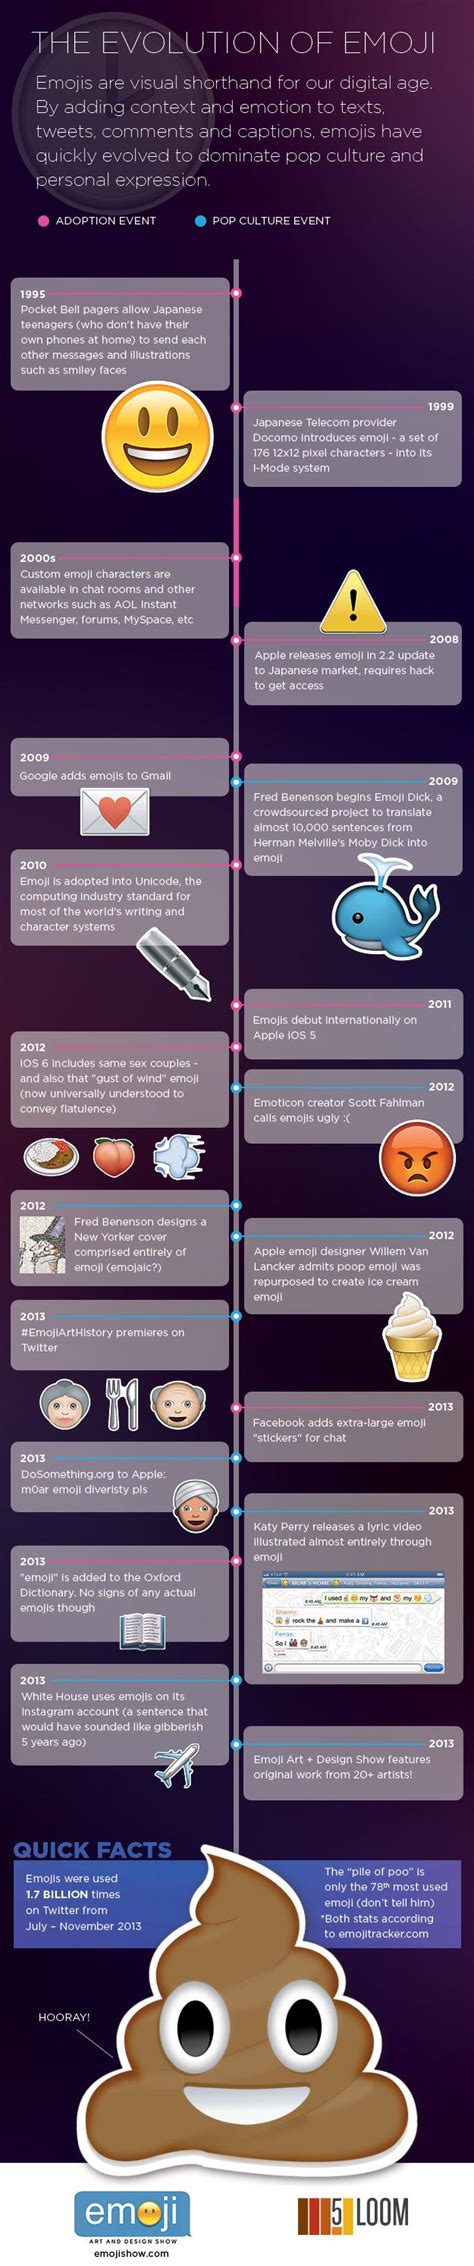 Emoji Timeline History Business Insider